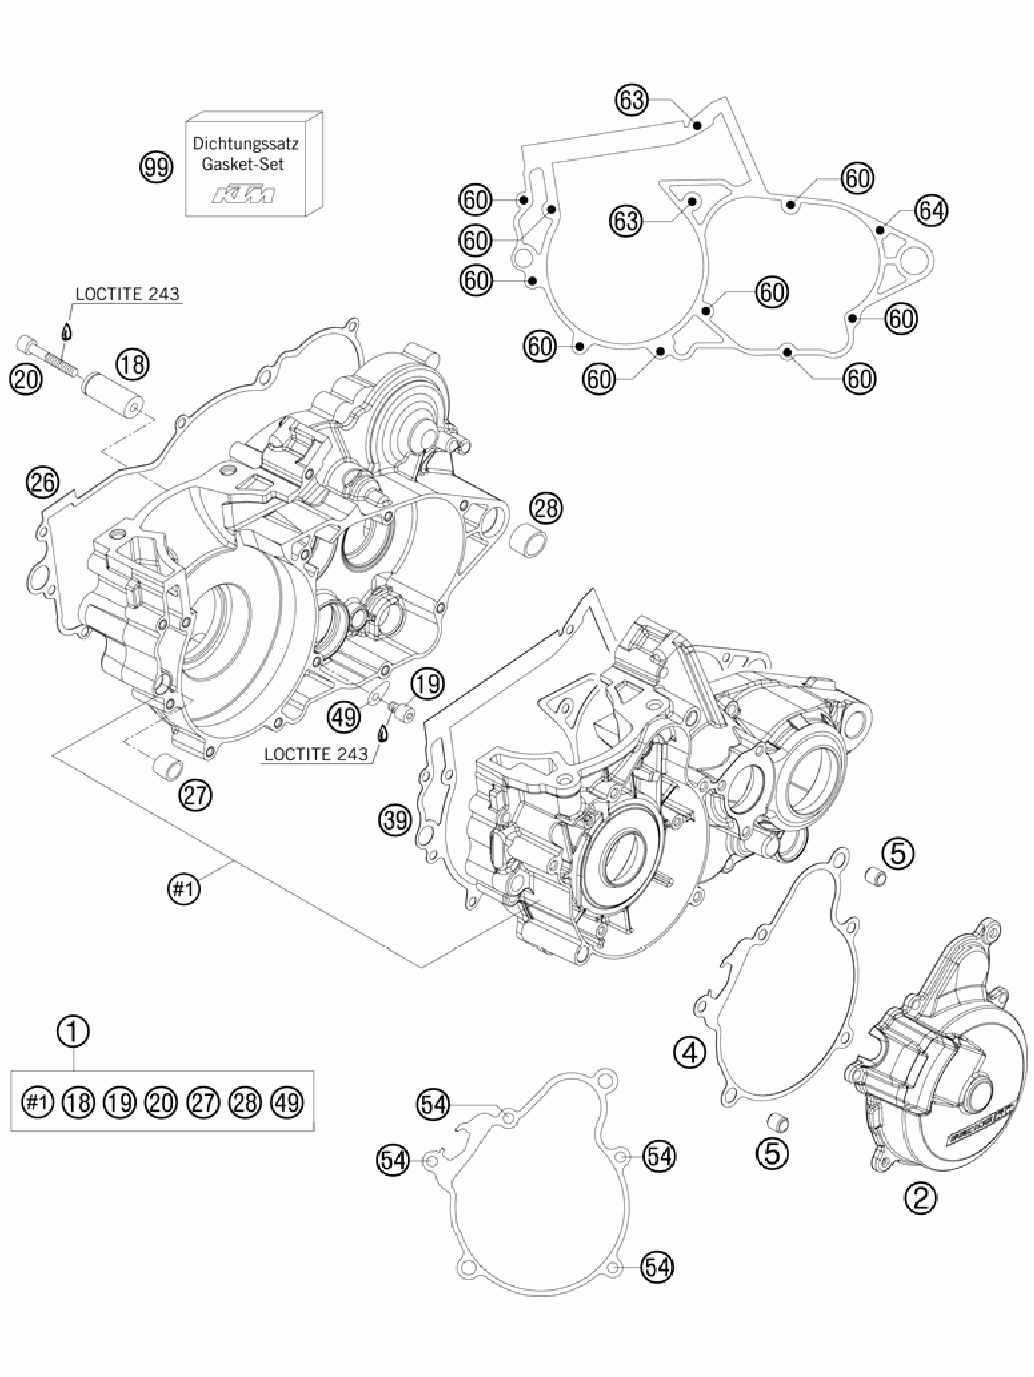 Engine case